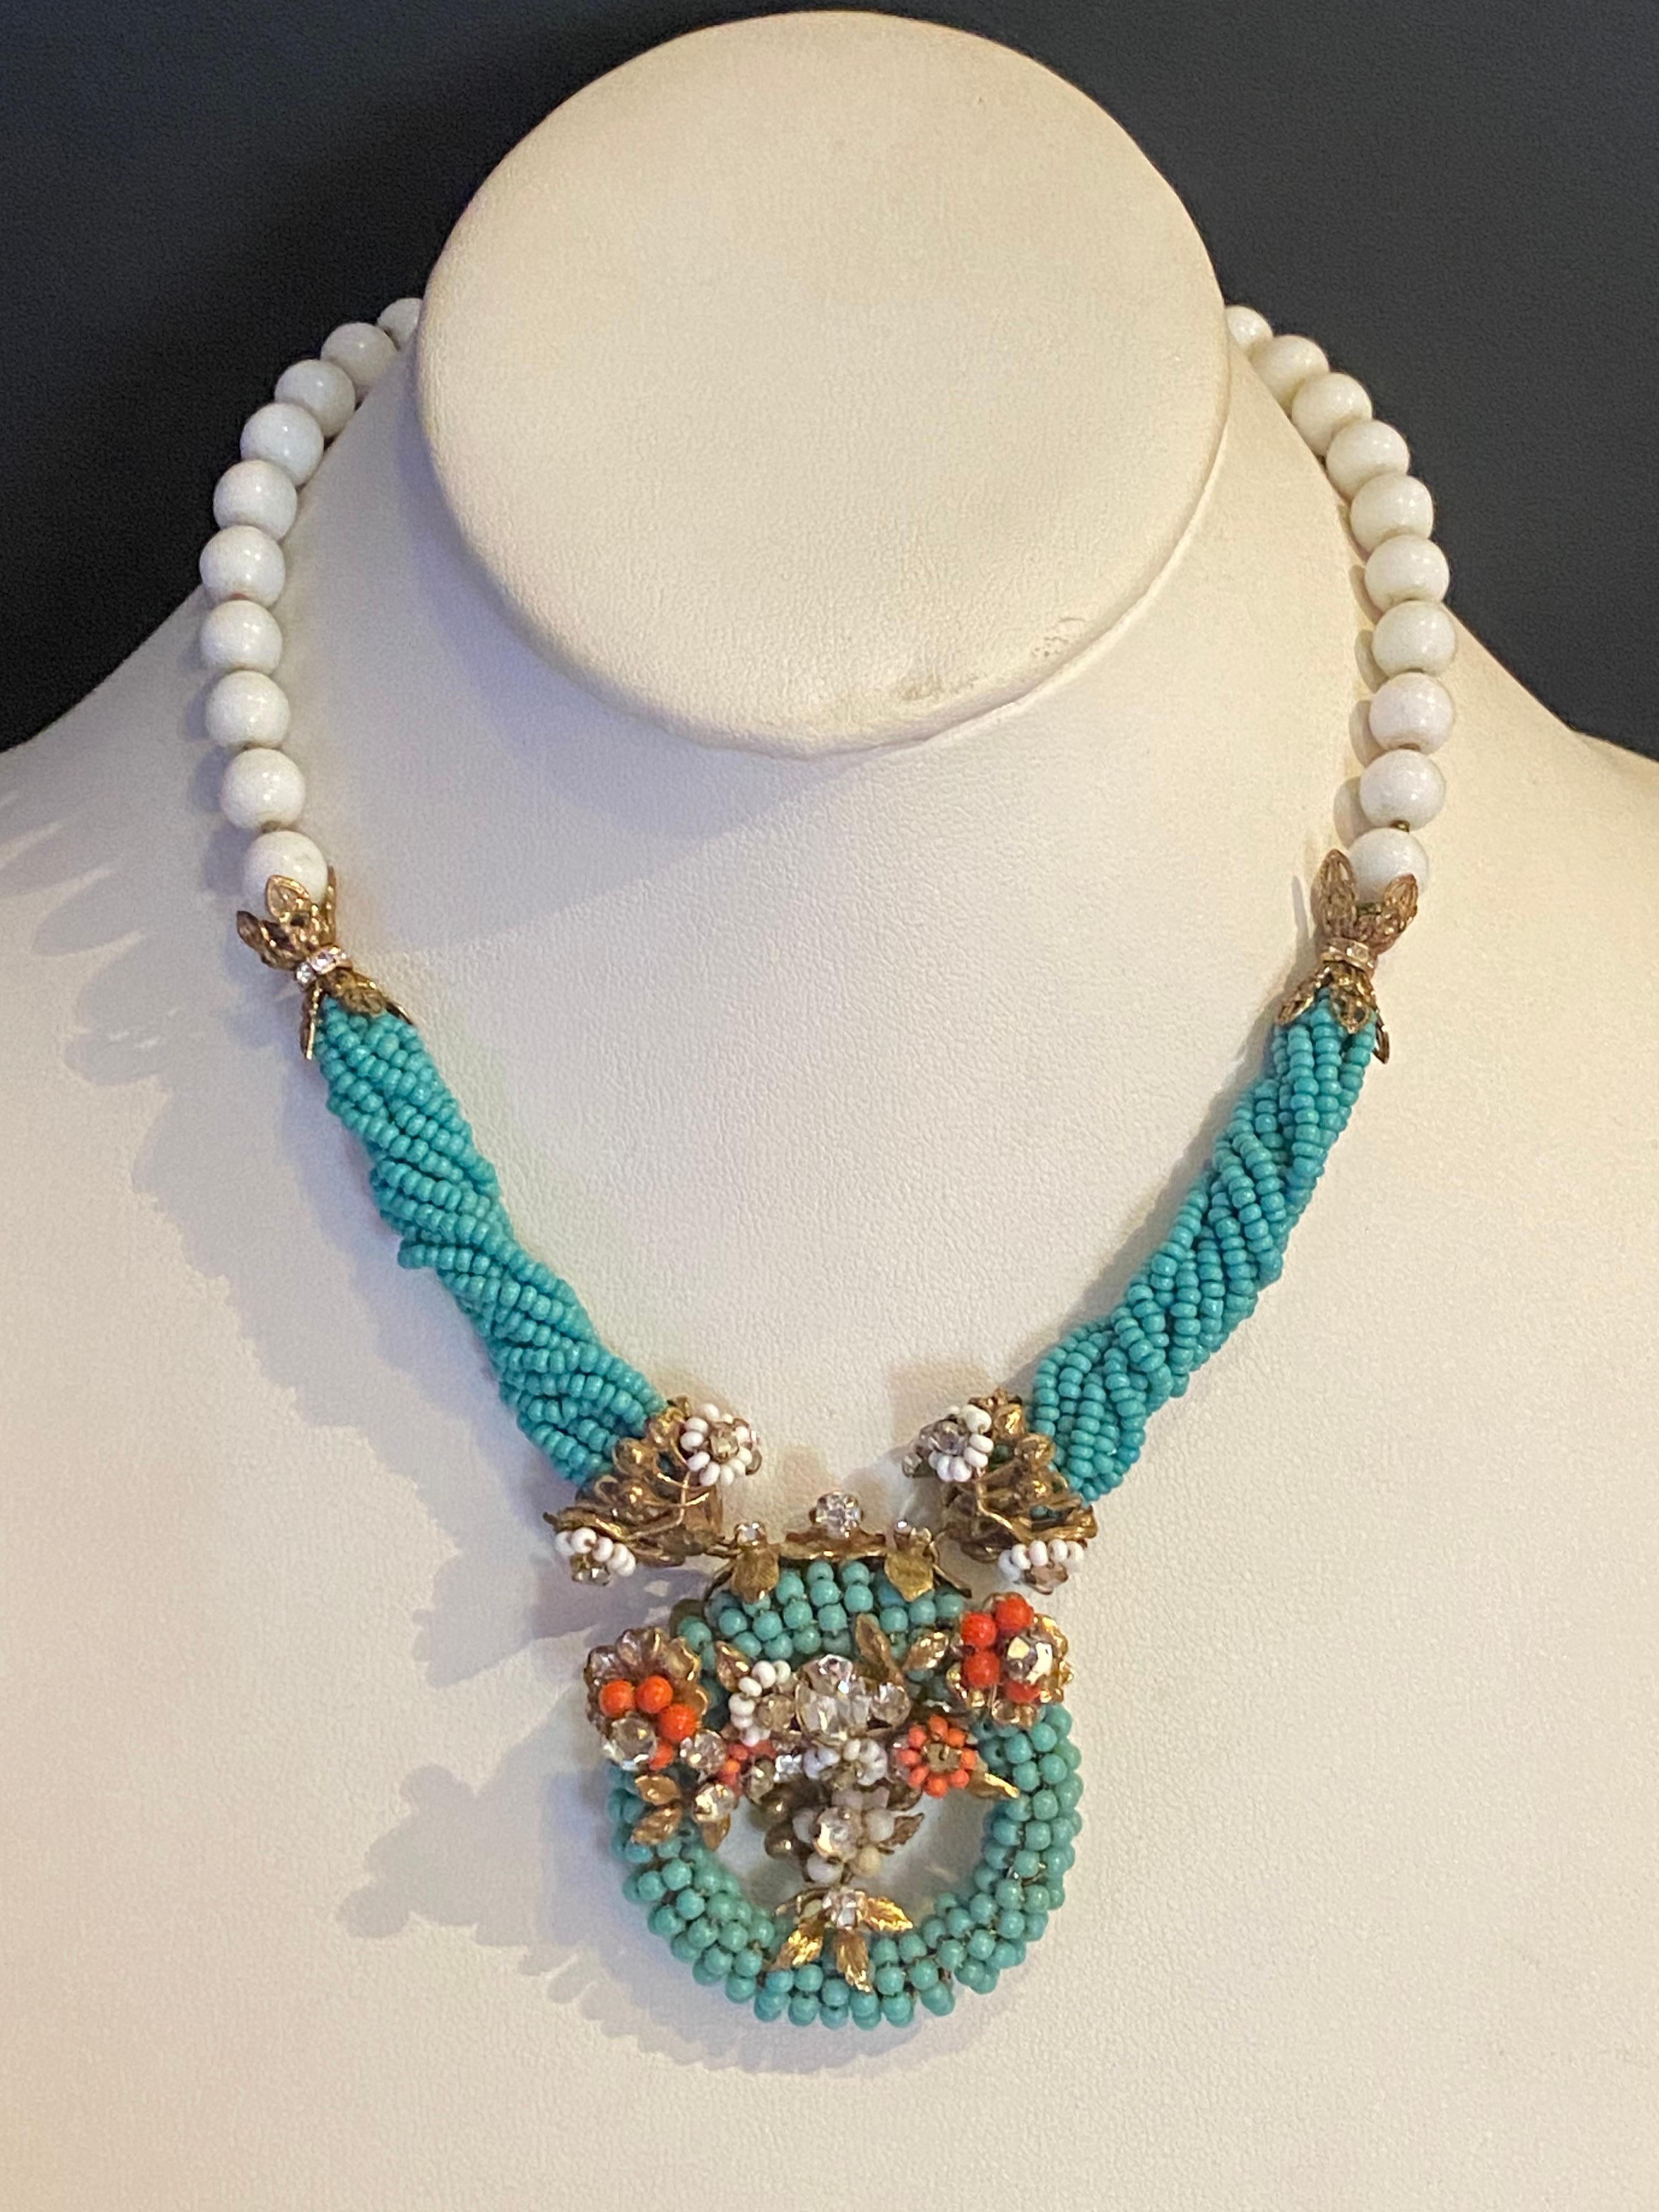 Ce magnifique set fait à la main présente une étonnante combinaison de perles de rocaille en verre turquoise, corail et blanc. Le collier est composé de perles de rocaille en verre turquoise enroulées et torsadées, de grosses perles de rocaille en